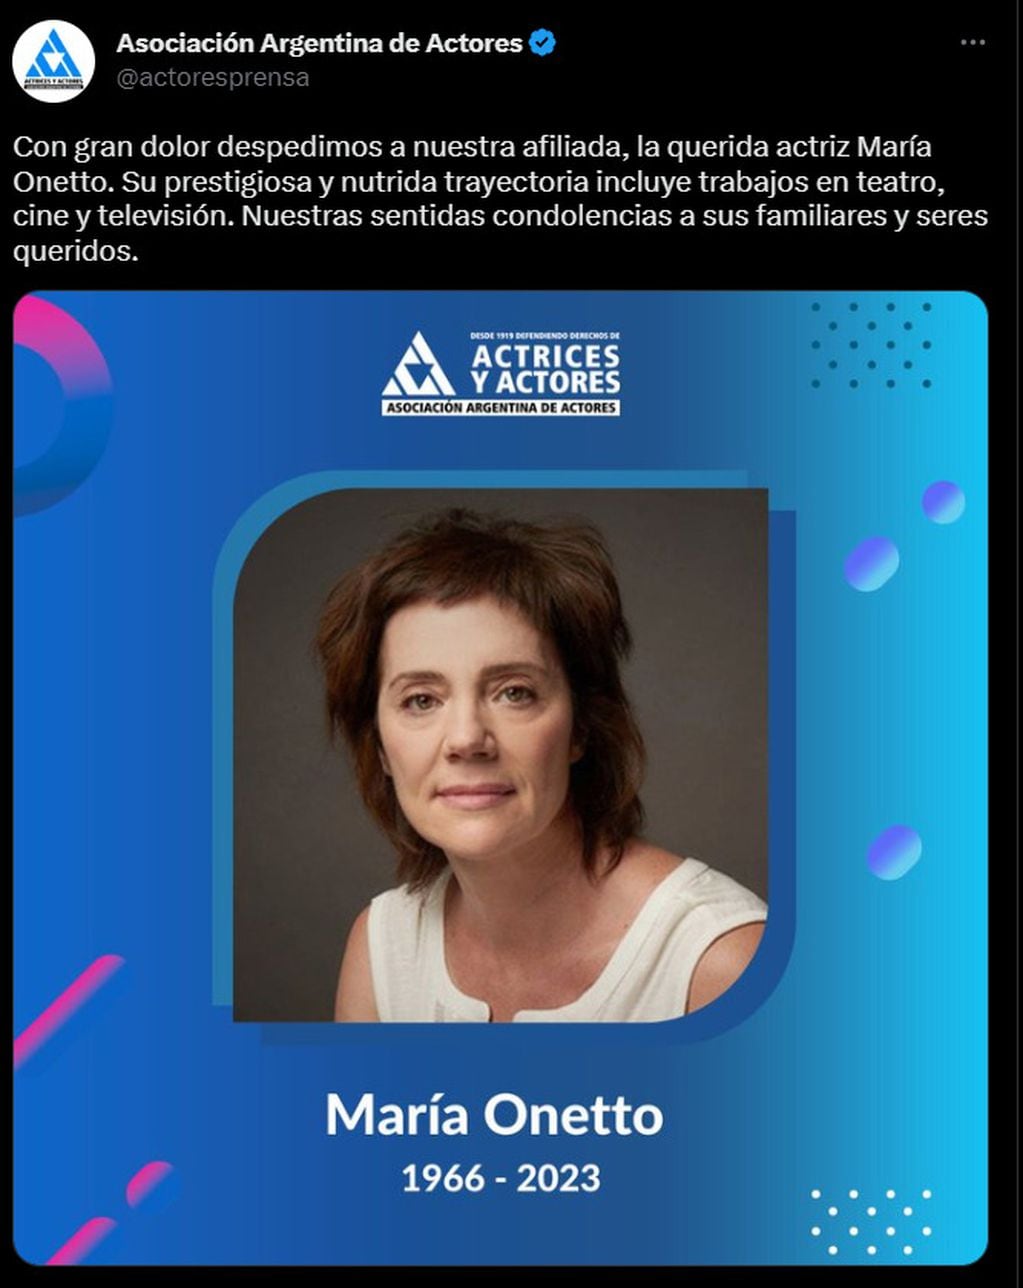 Maria Onetto